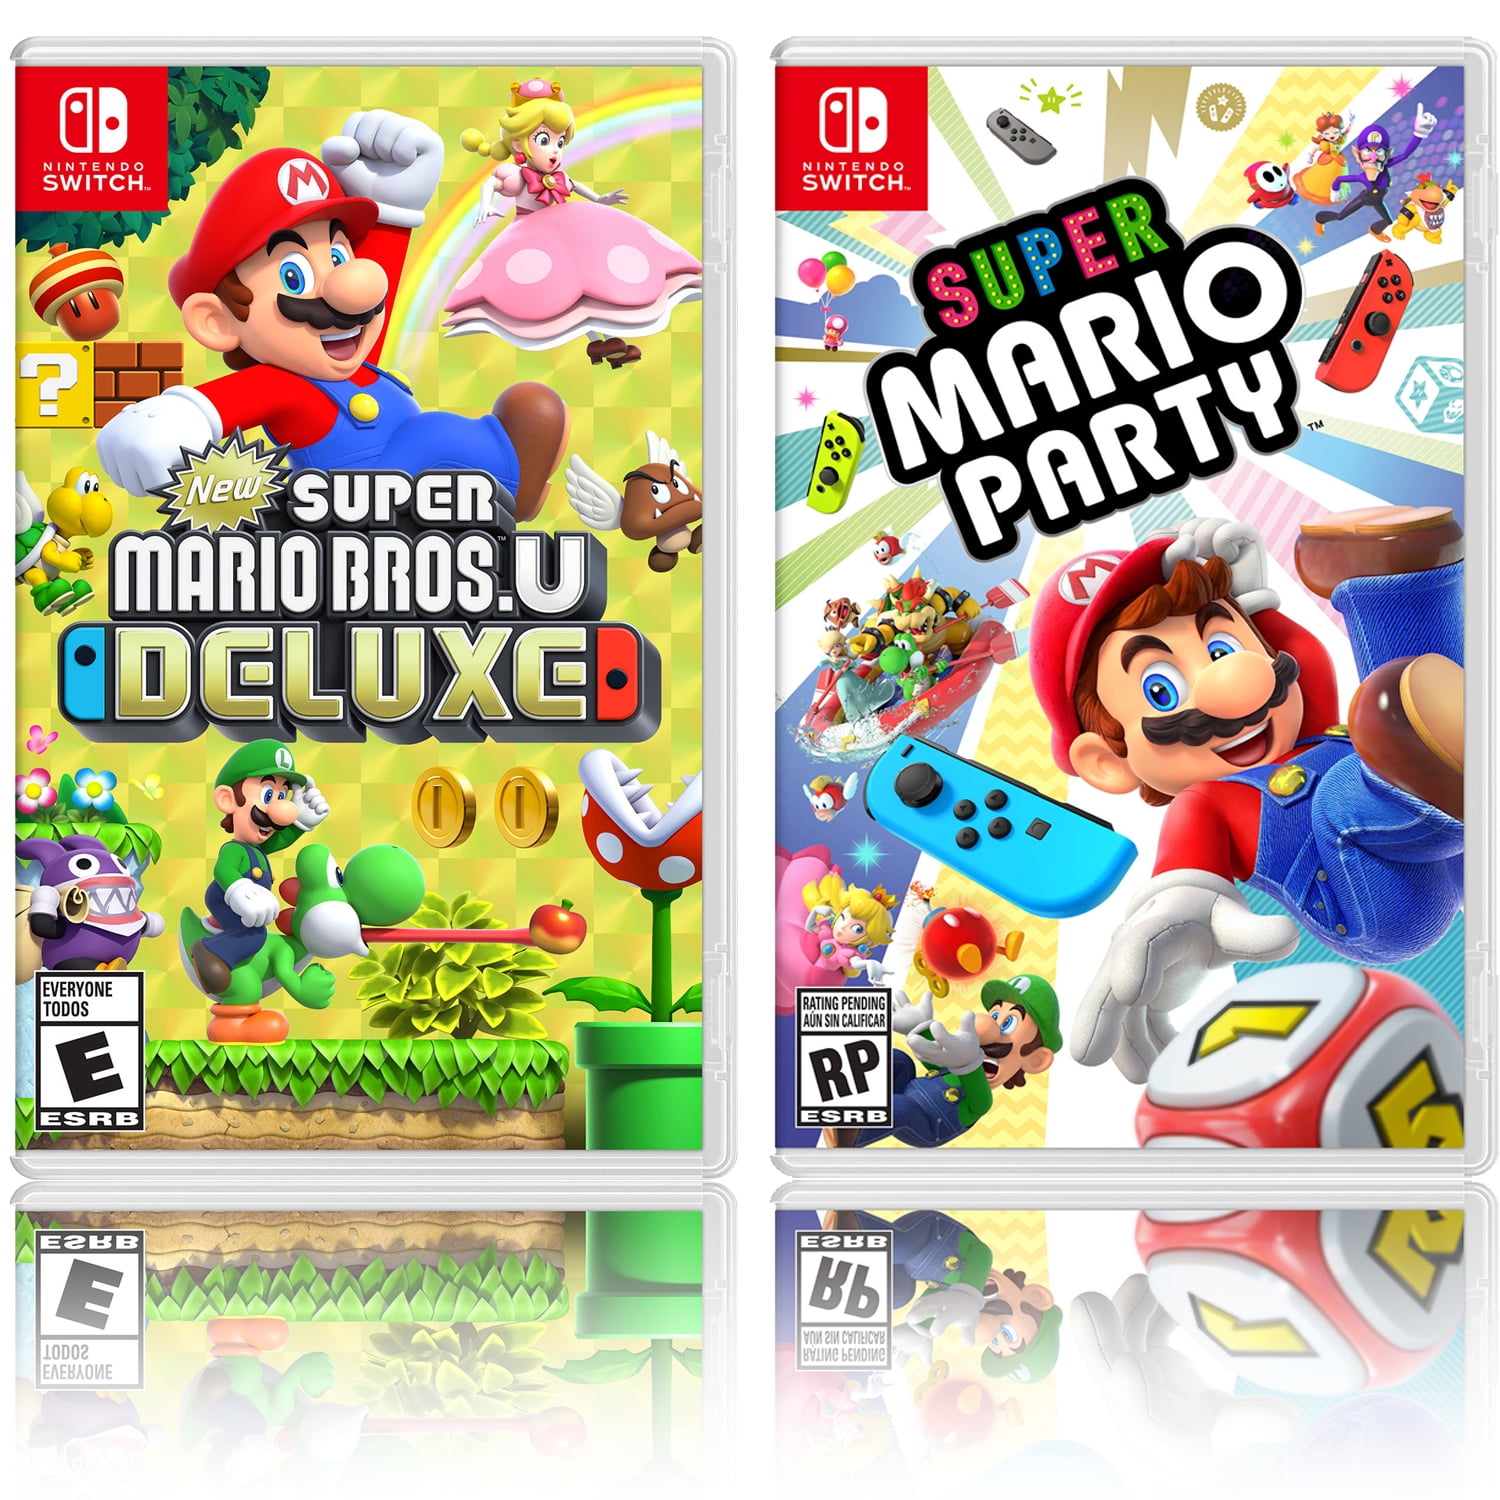 New Super Mario Bros. U Deluxe + Mario Kart 8 Deluxe - Two Game